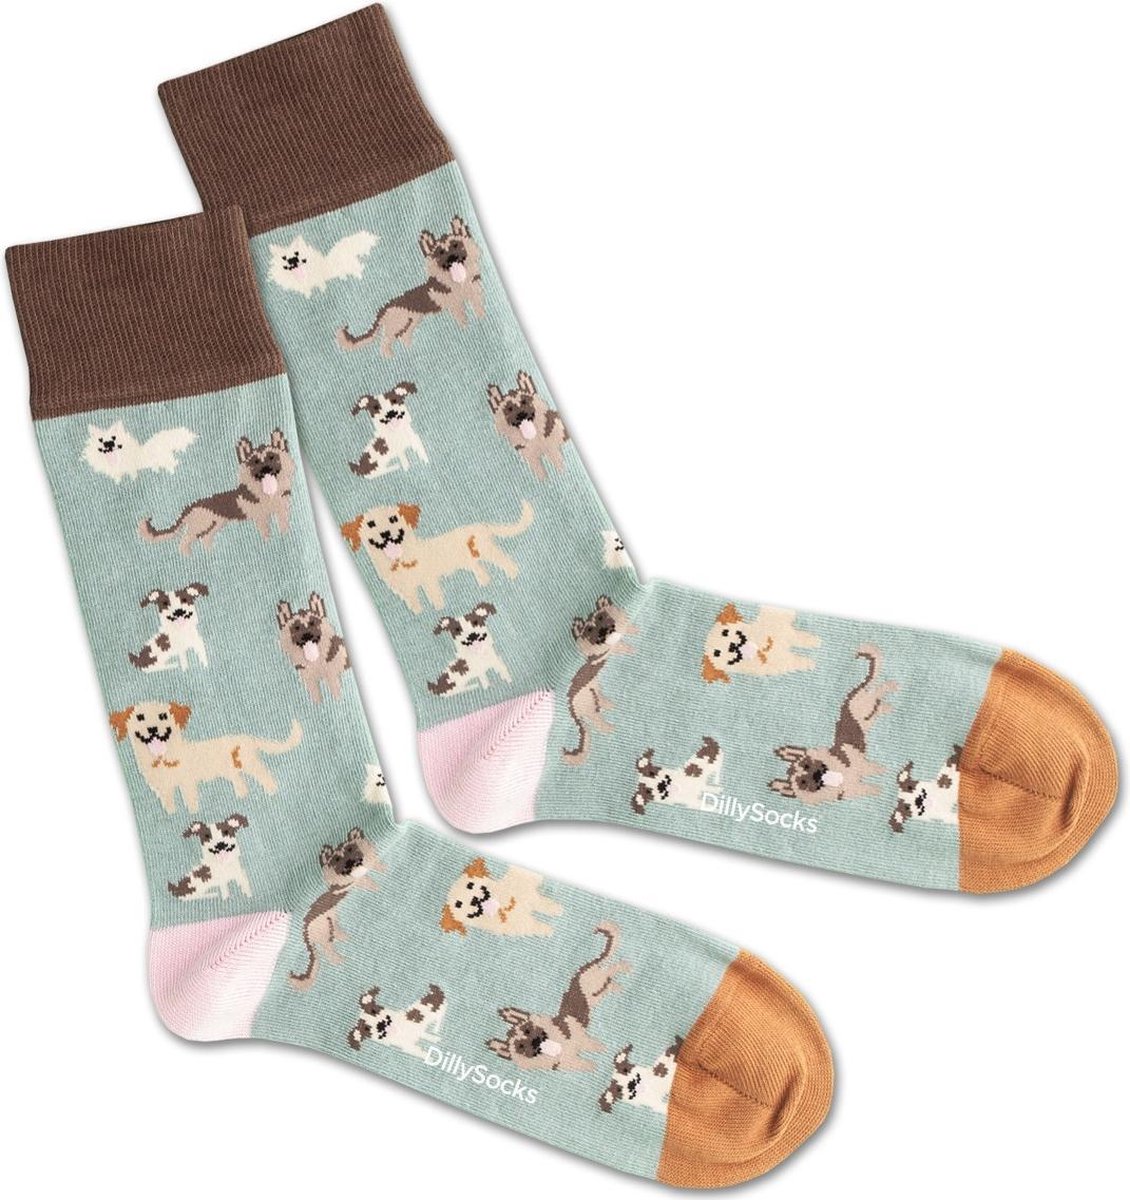 Dilly Socks Doggy Dog Sock